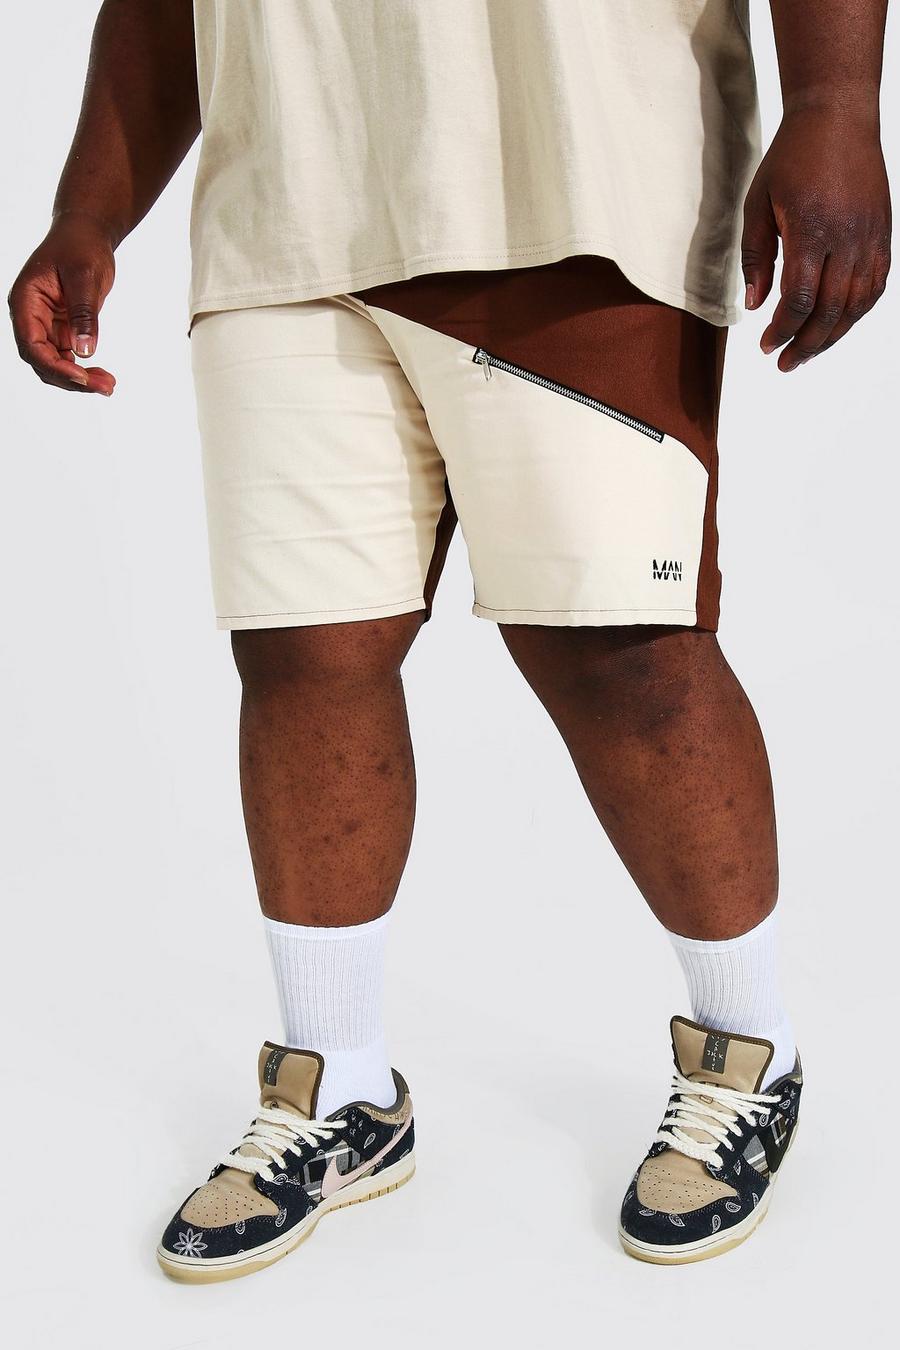 Pantalón corto Plus MAN cargo con cremallera y bolsillos a dos colores, Chocolate marrone